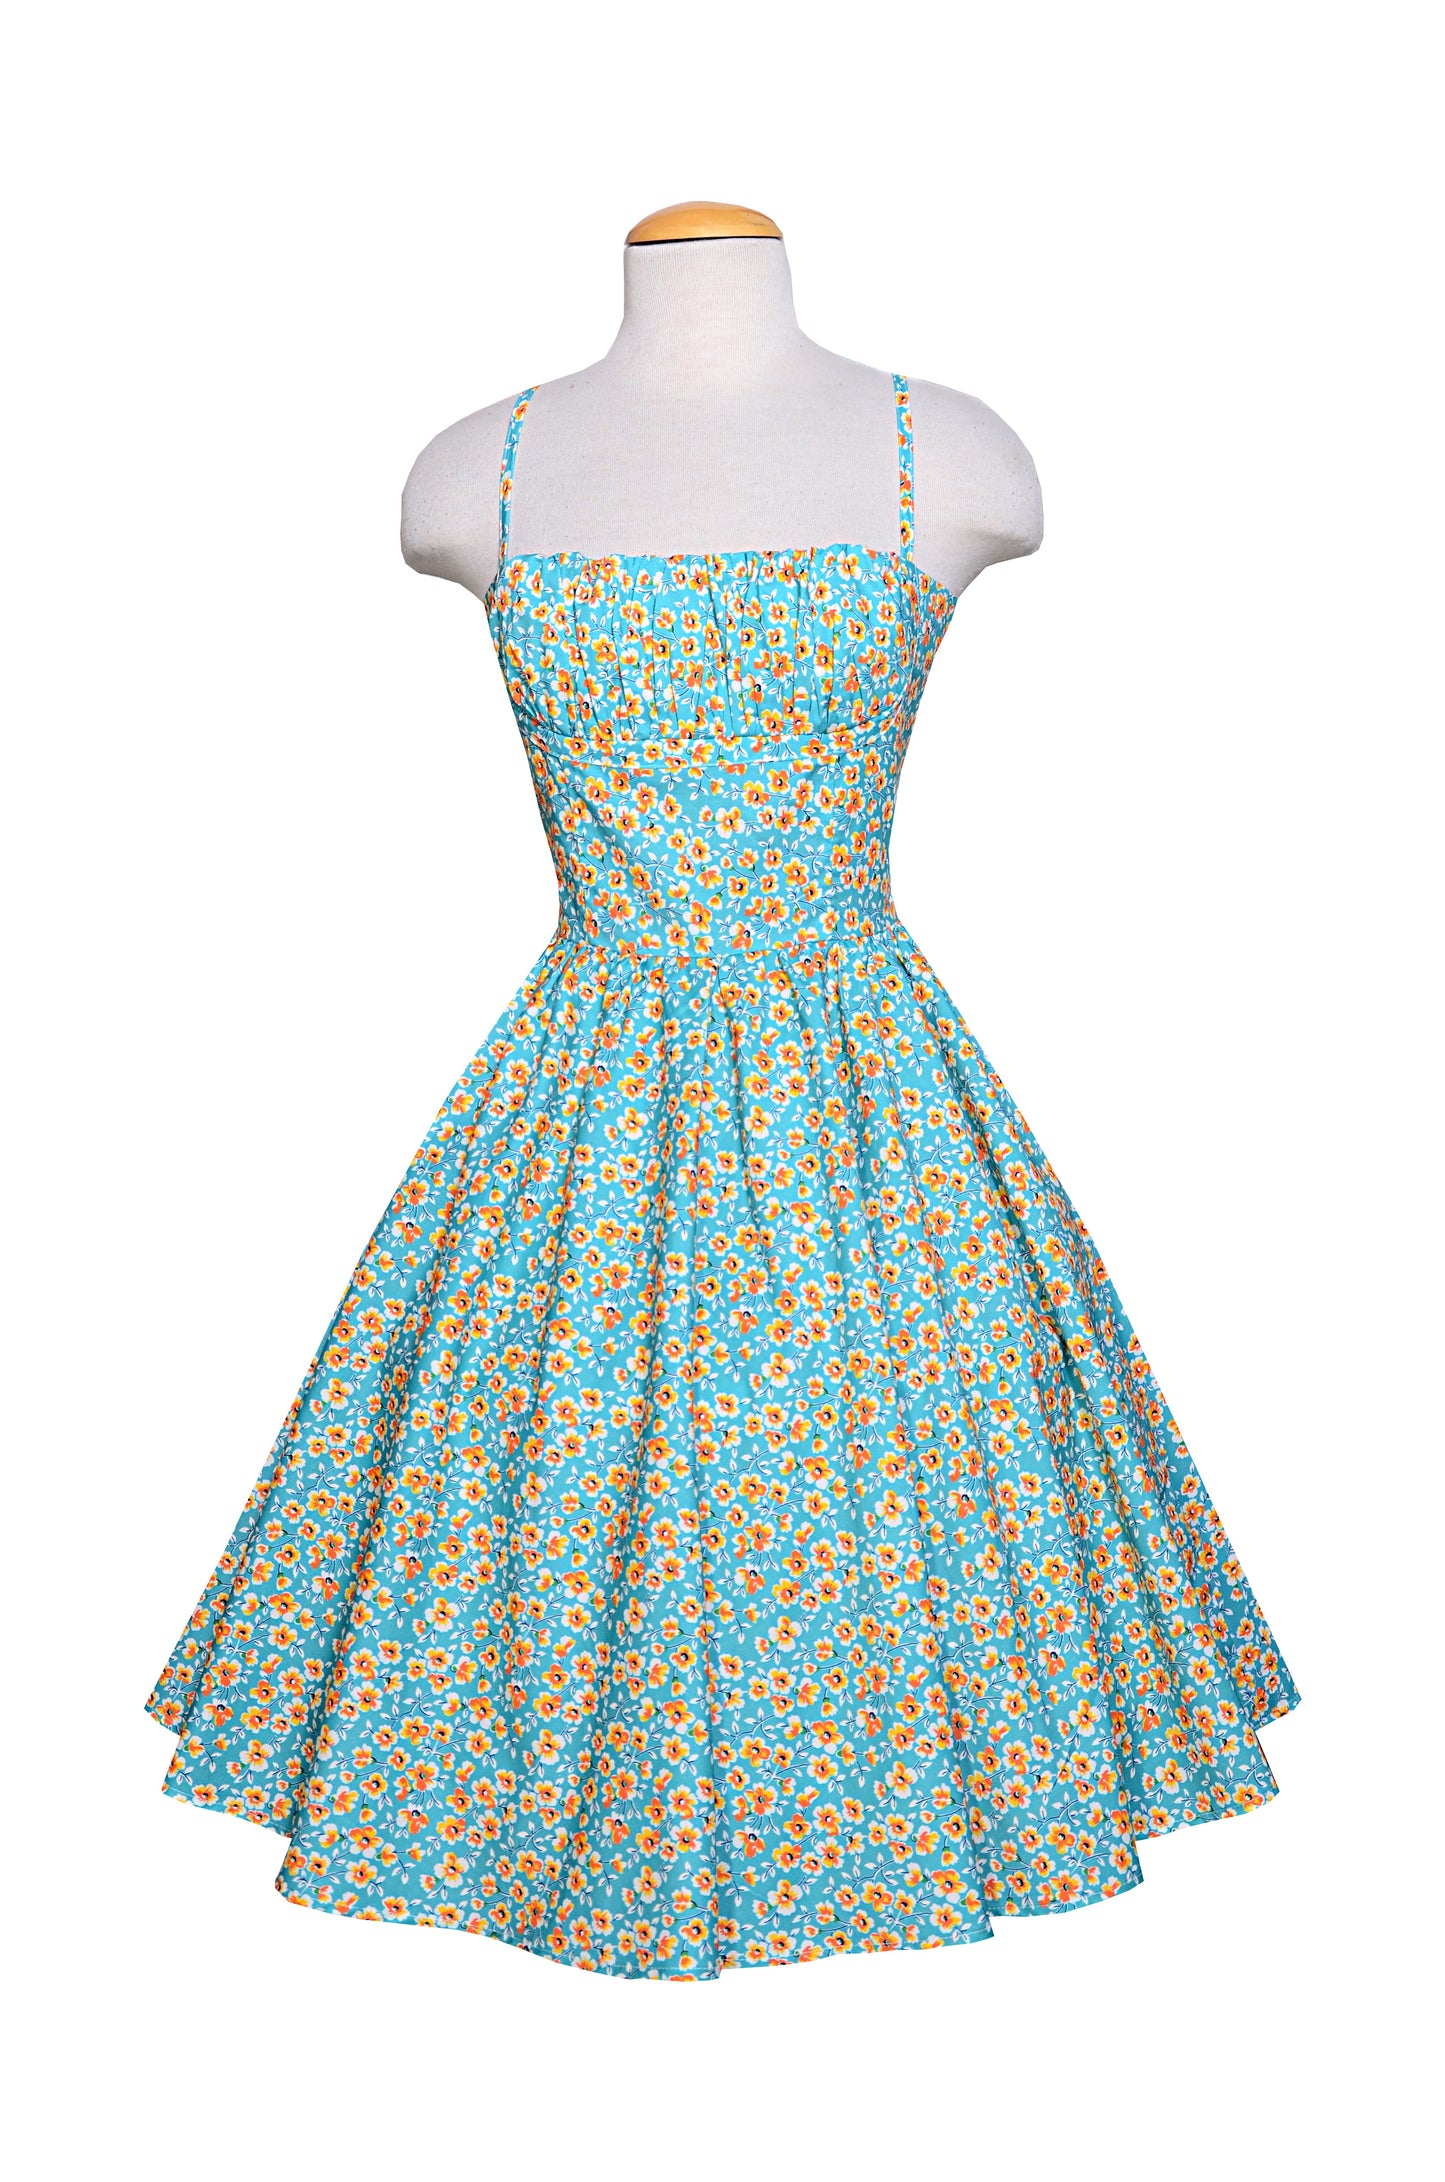 TammieW Dress in California Poppy print